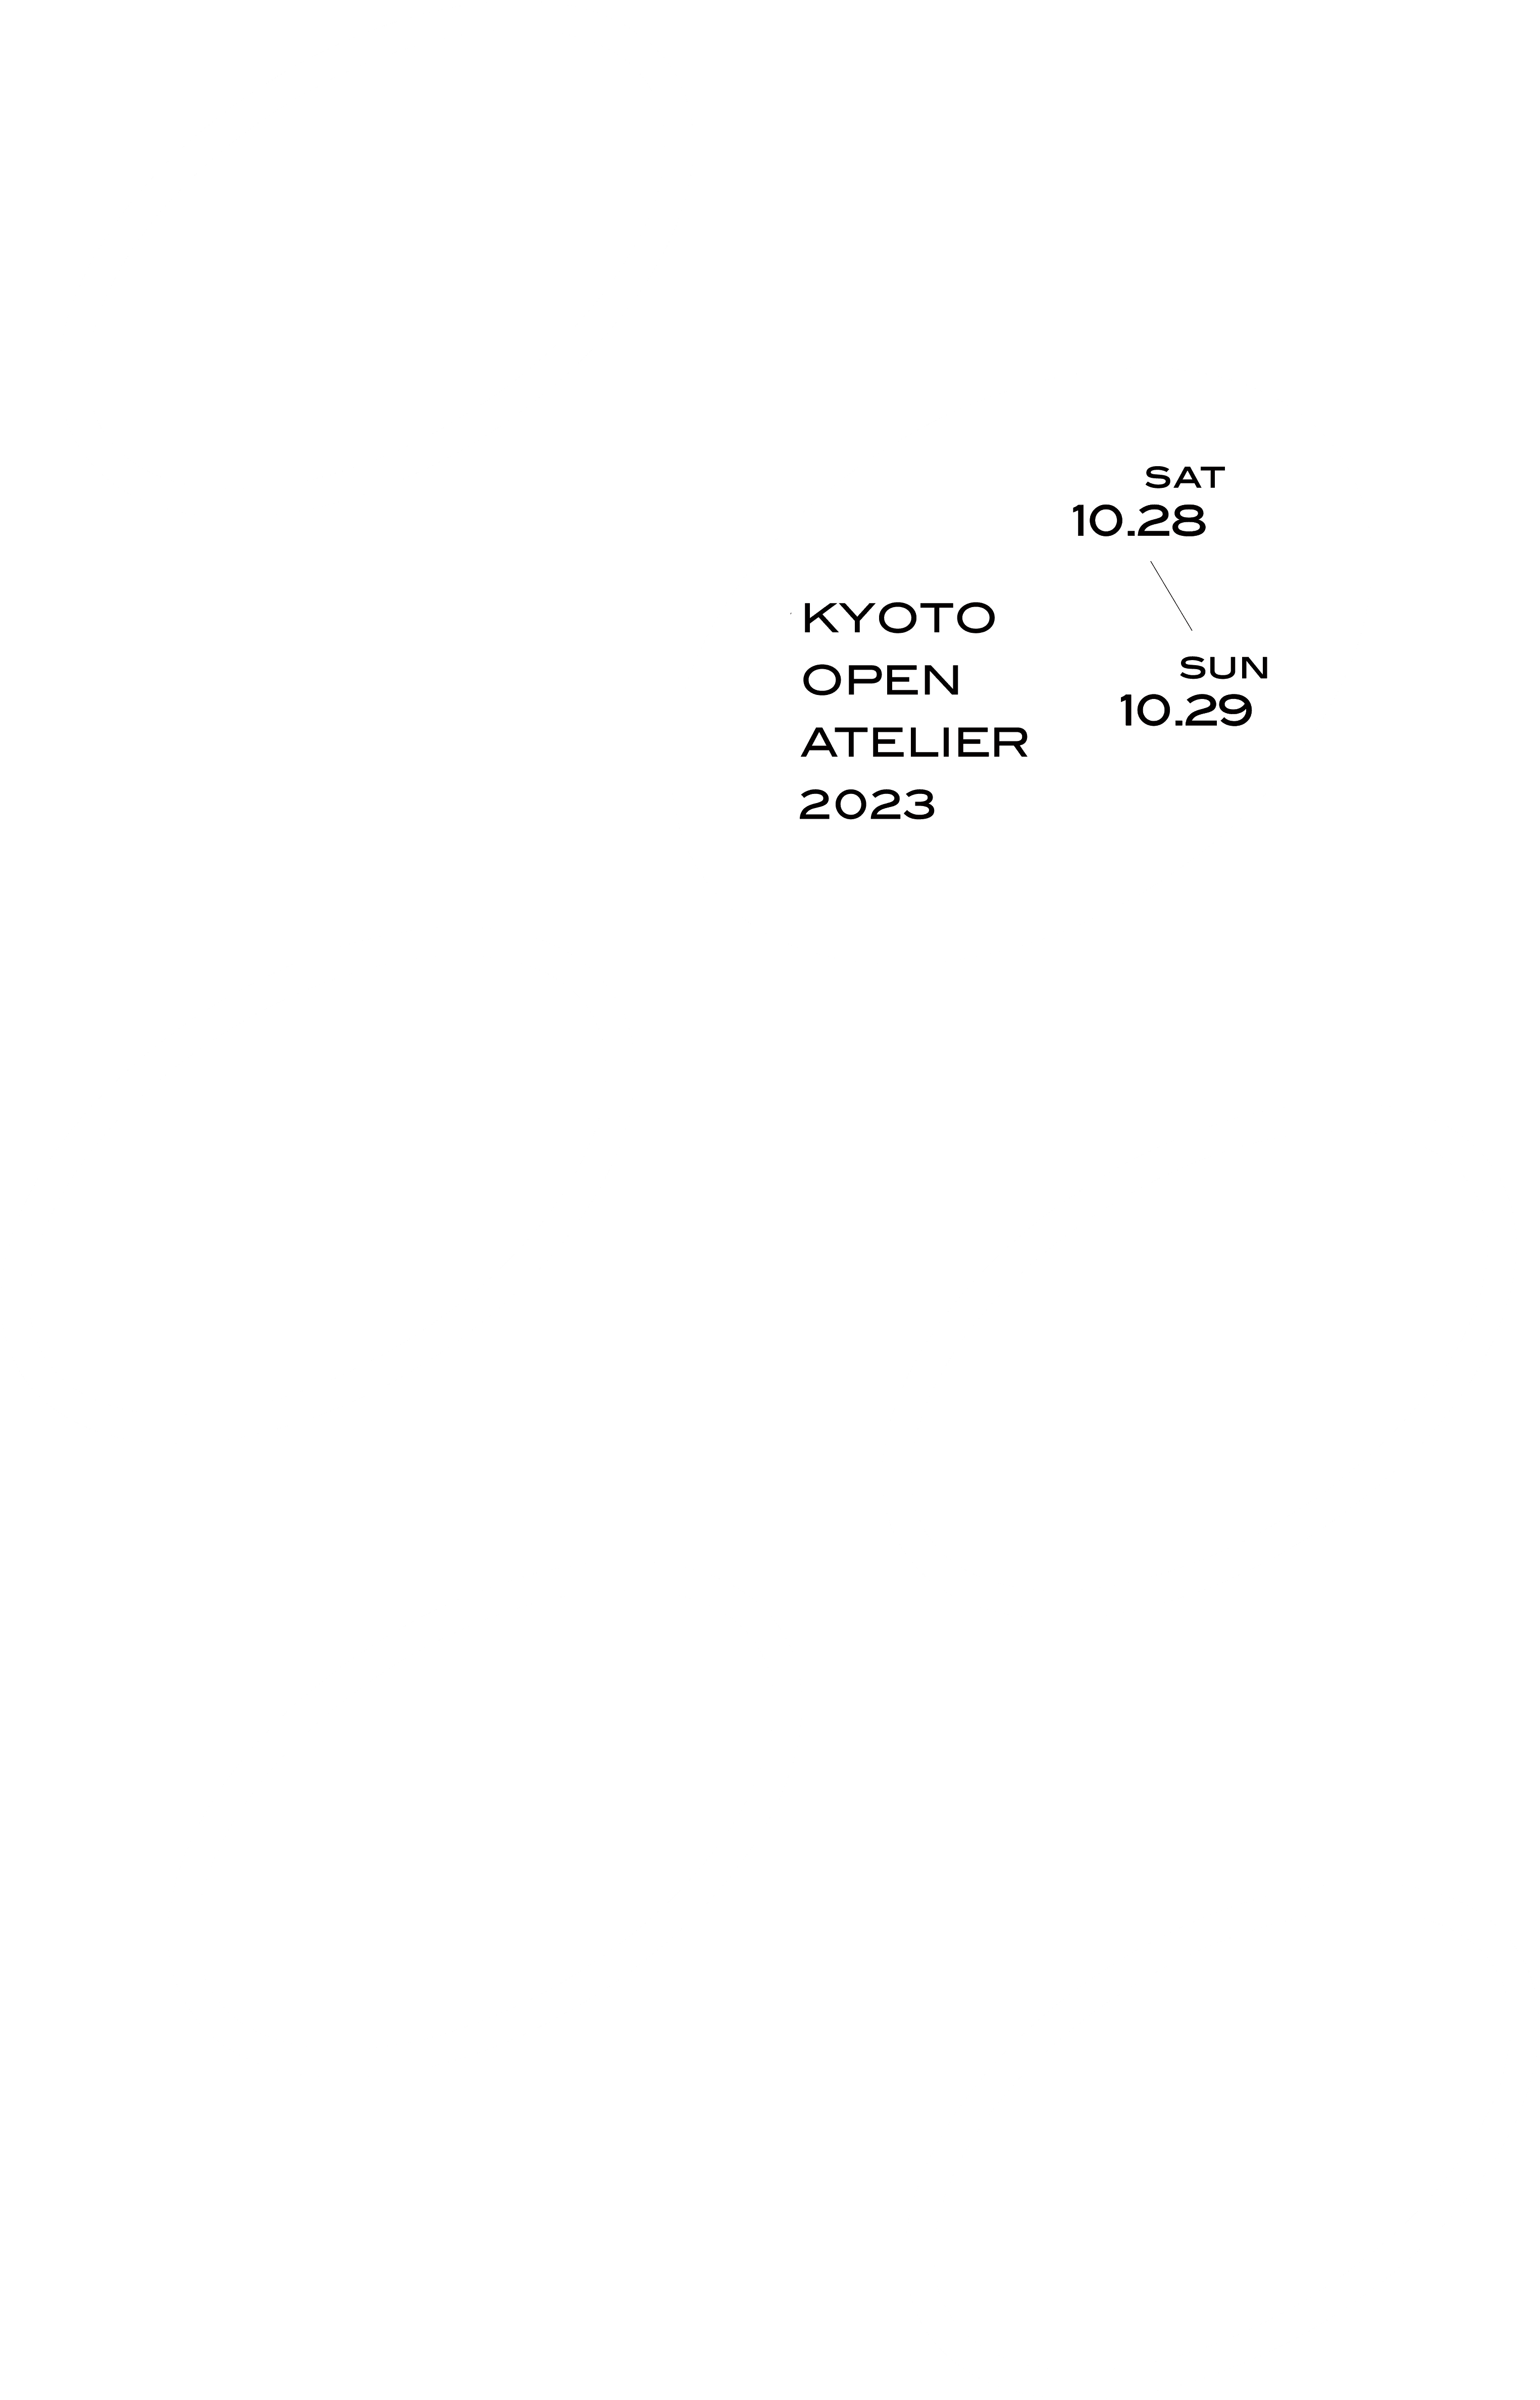 KYOTO OPEN ATELIER 2023 10.28 sat - 10.29 sun